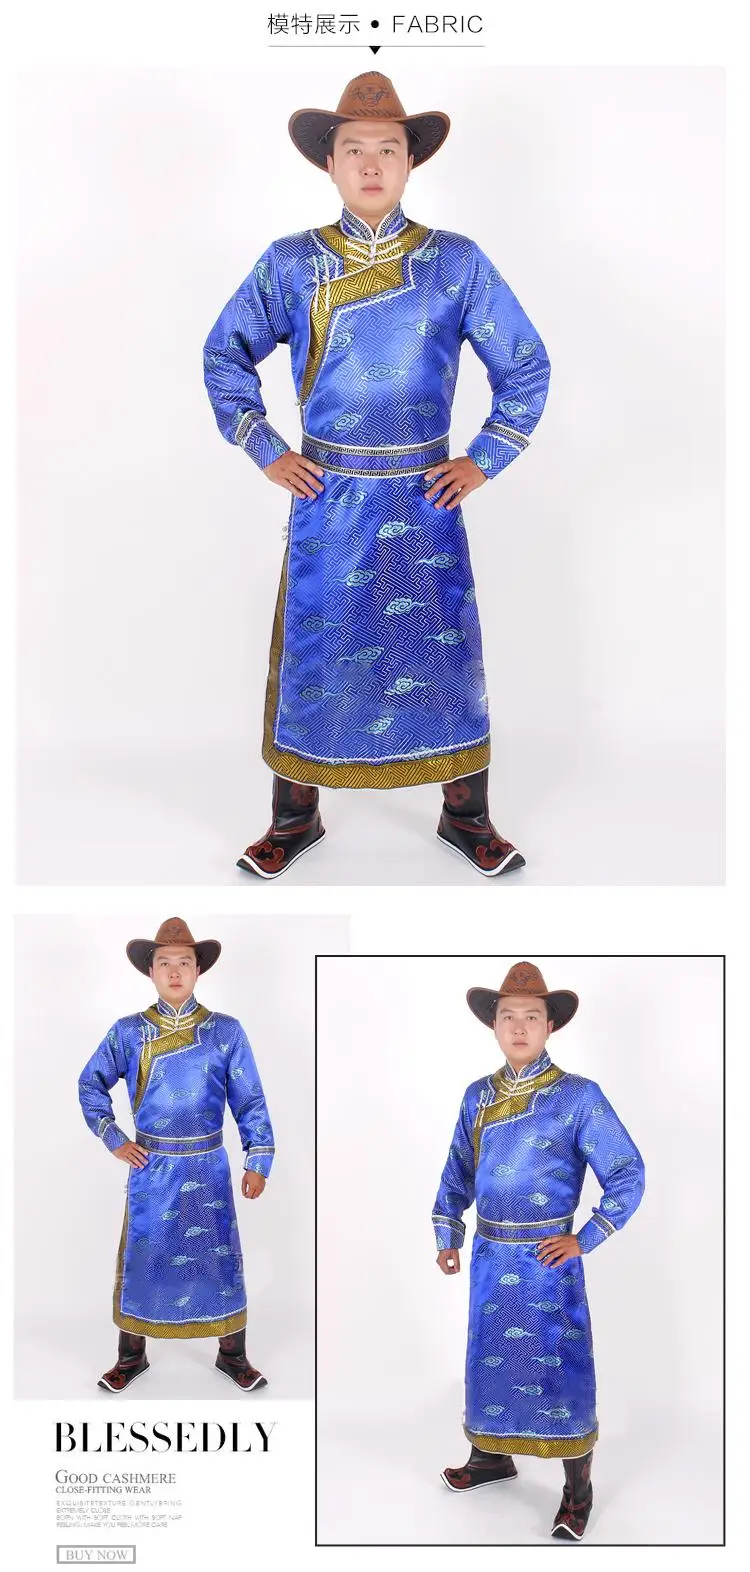 Этническая костюмы Свадебная вечеринка халат для мужчин длинные монгольский наряд китайский стиль национальный фестиваль этап мужской